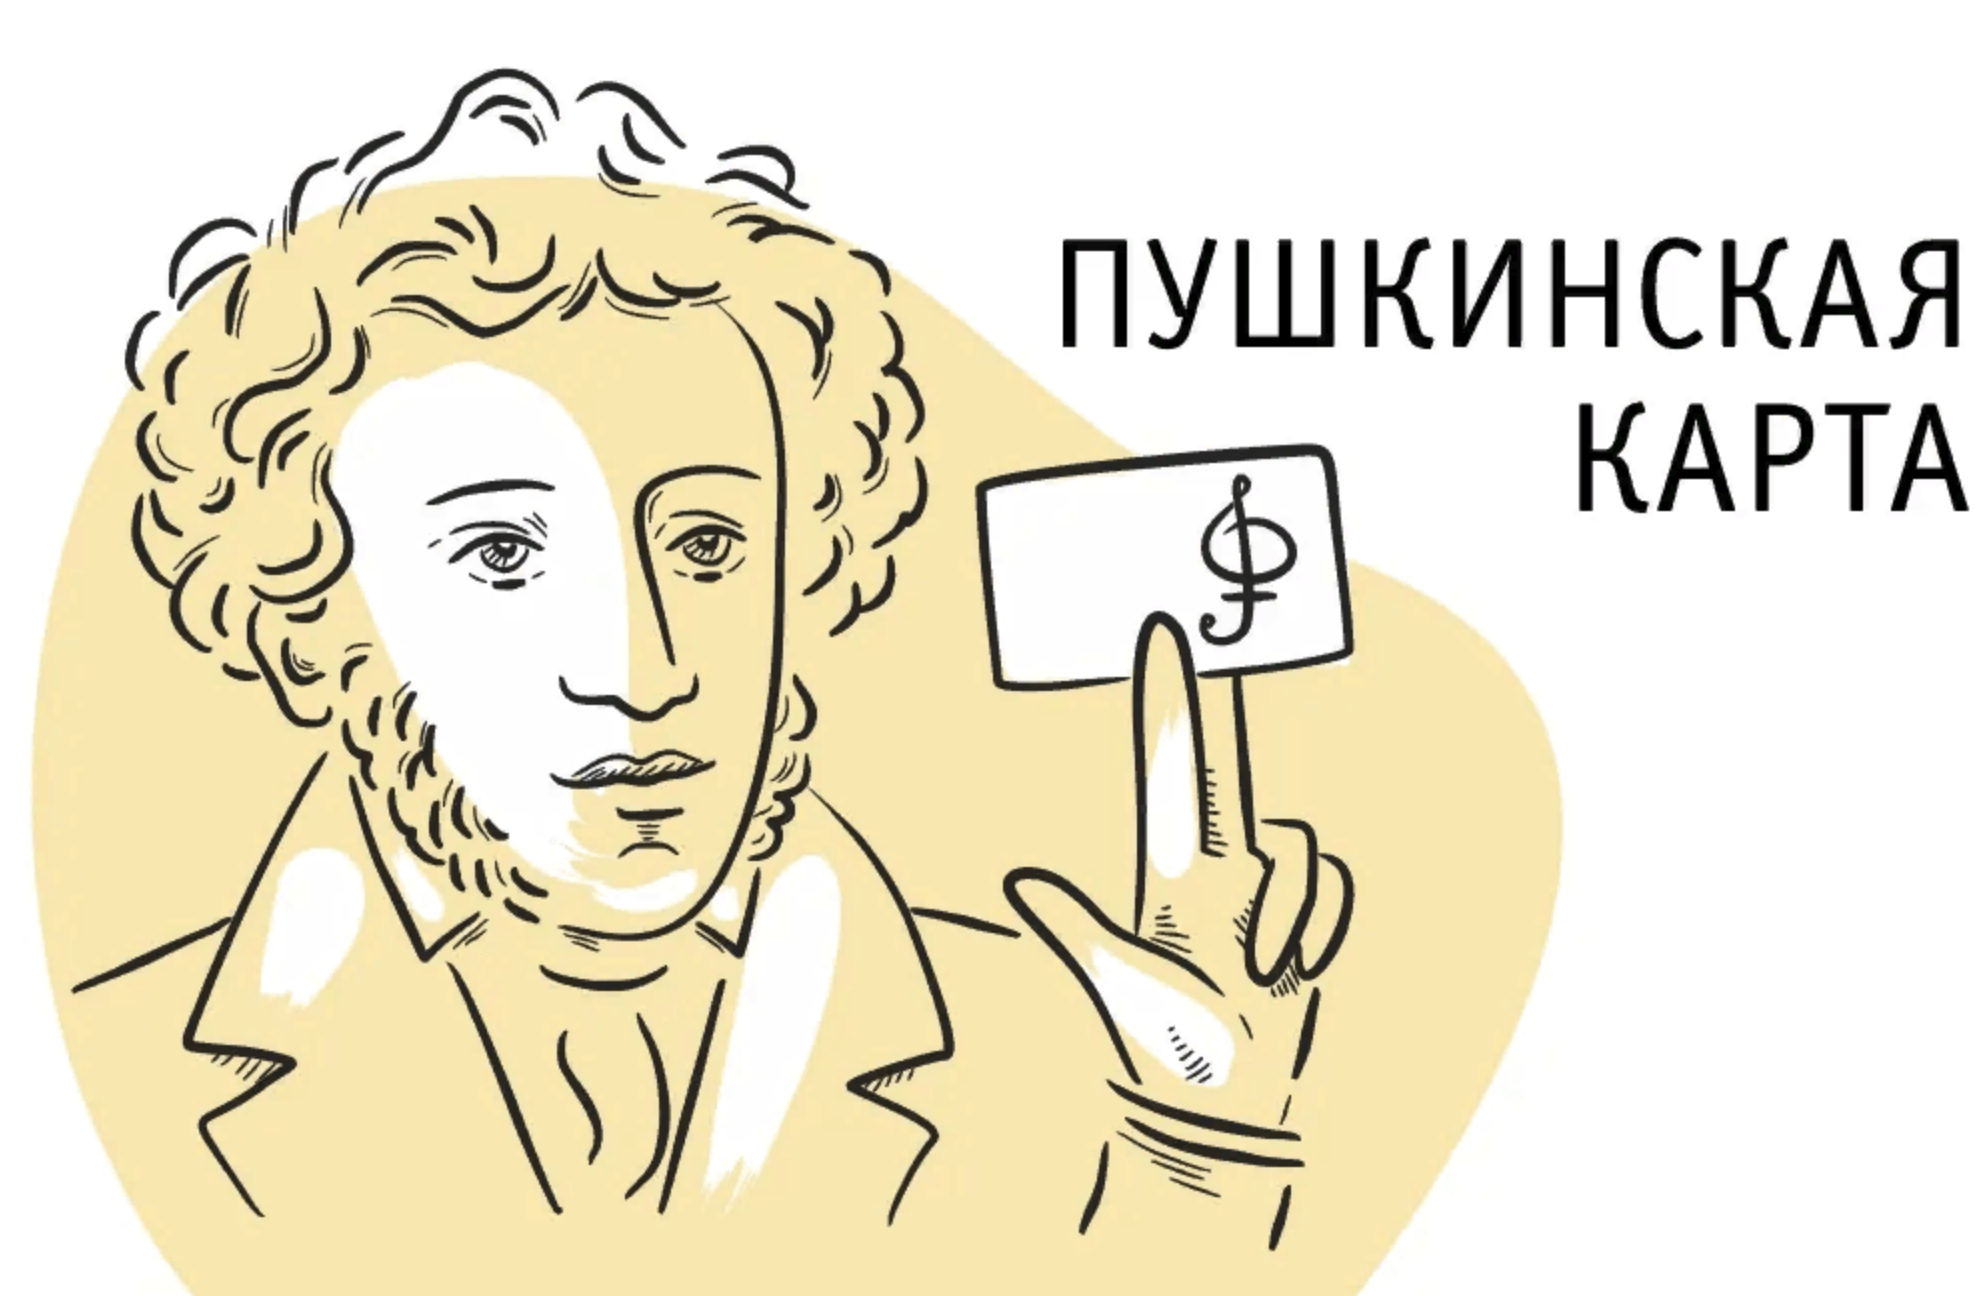 Стань культурней с Пушкинской картой